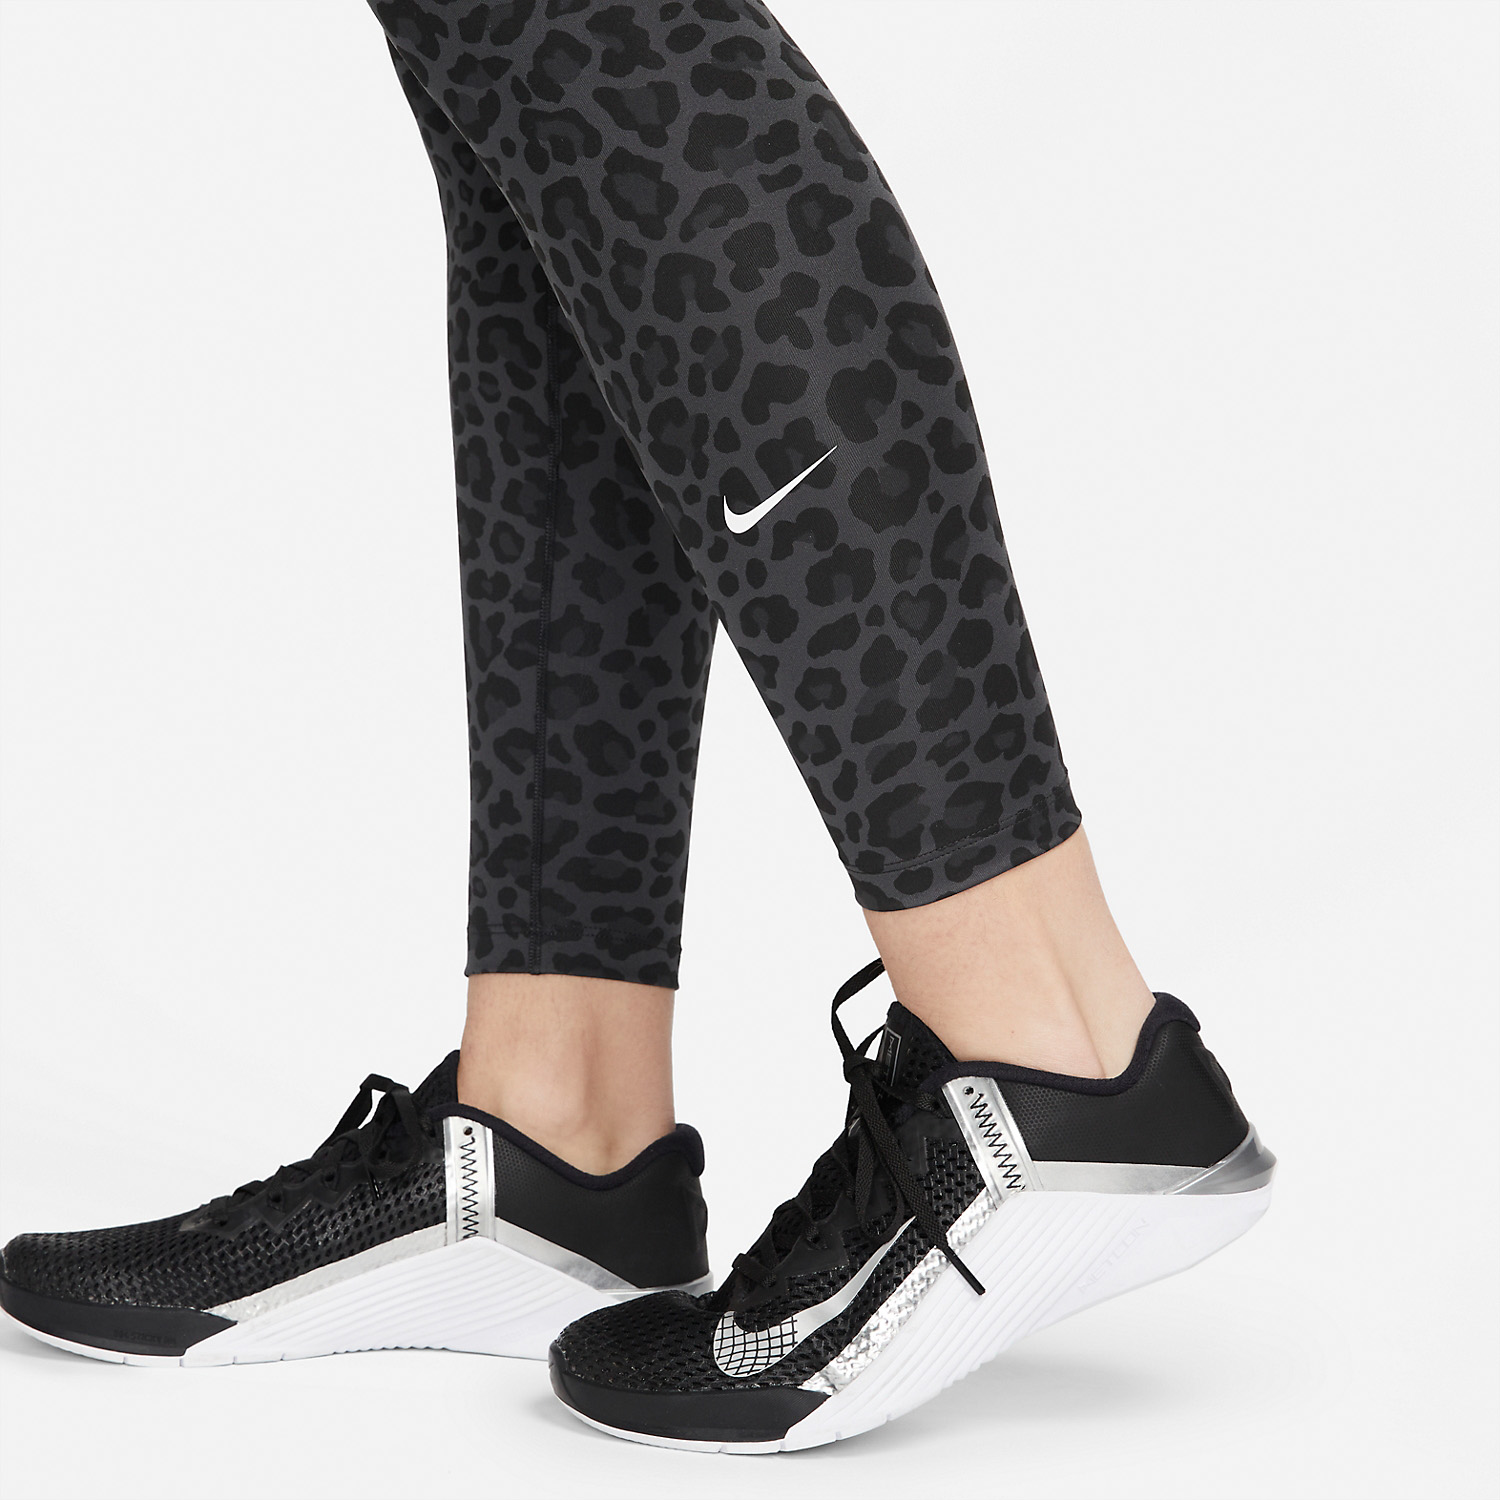 Calça Nike Dri-Fit Legging Preta Original - CSC742